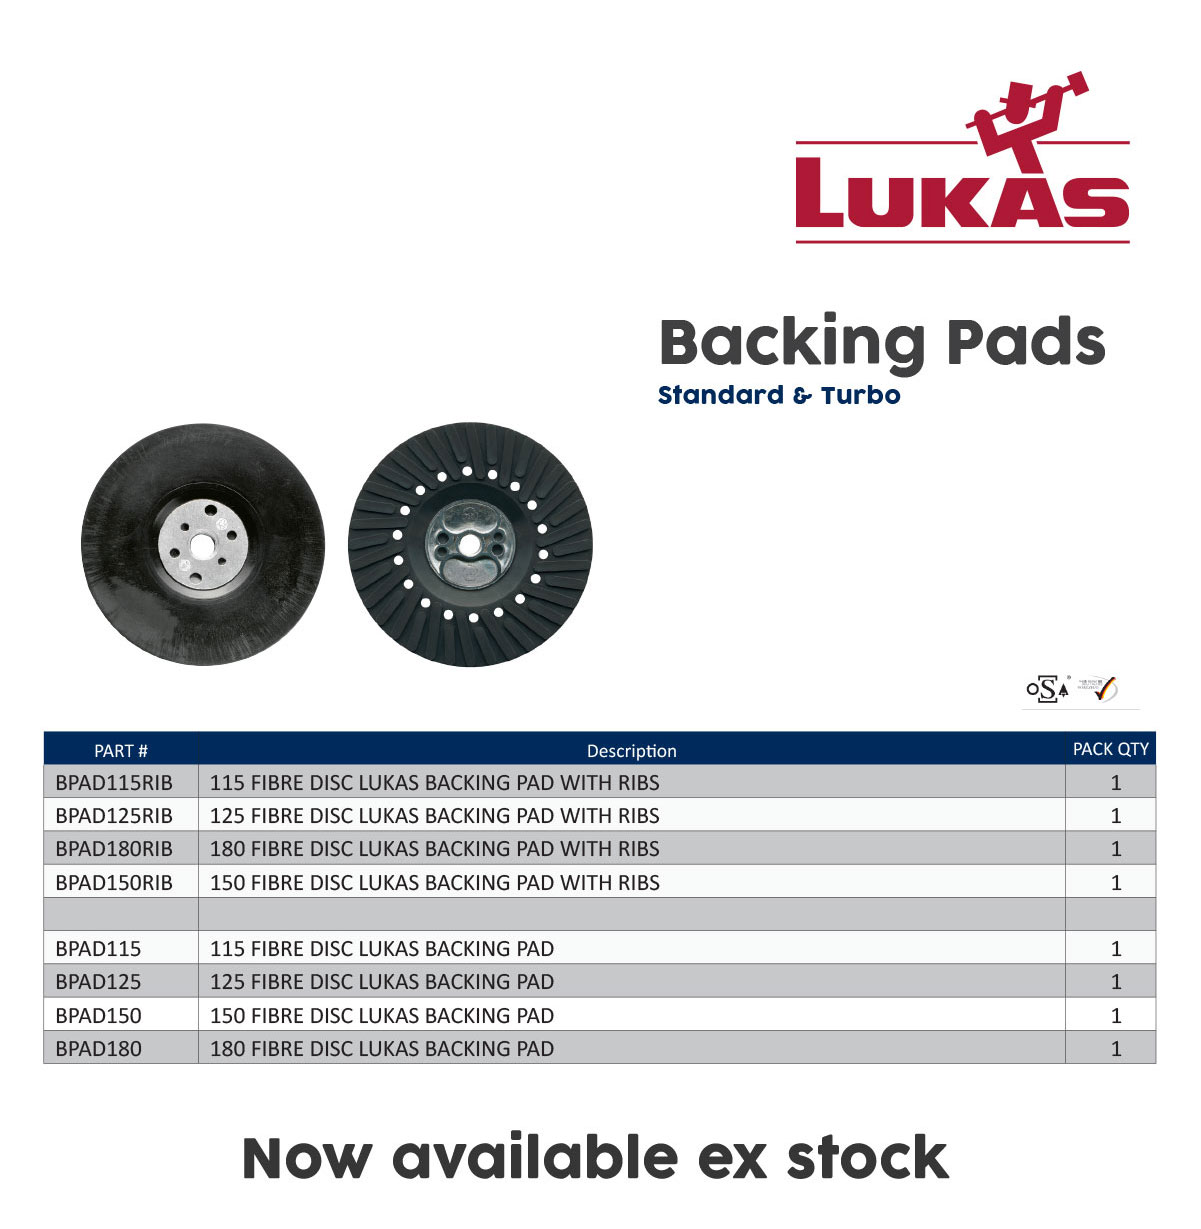 Lukas-backing-pads